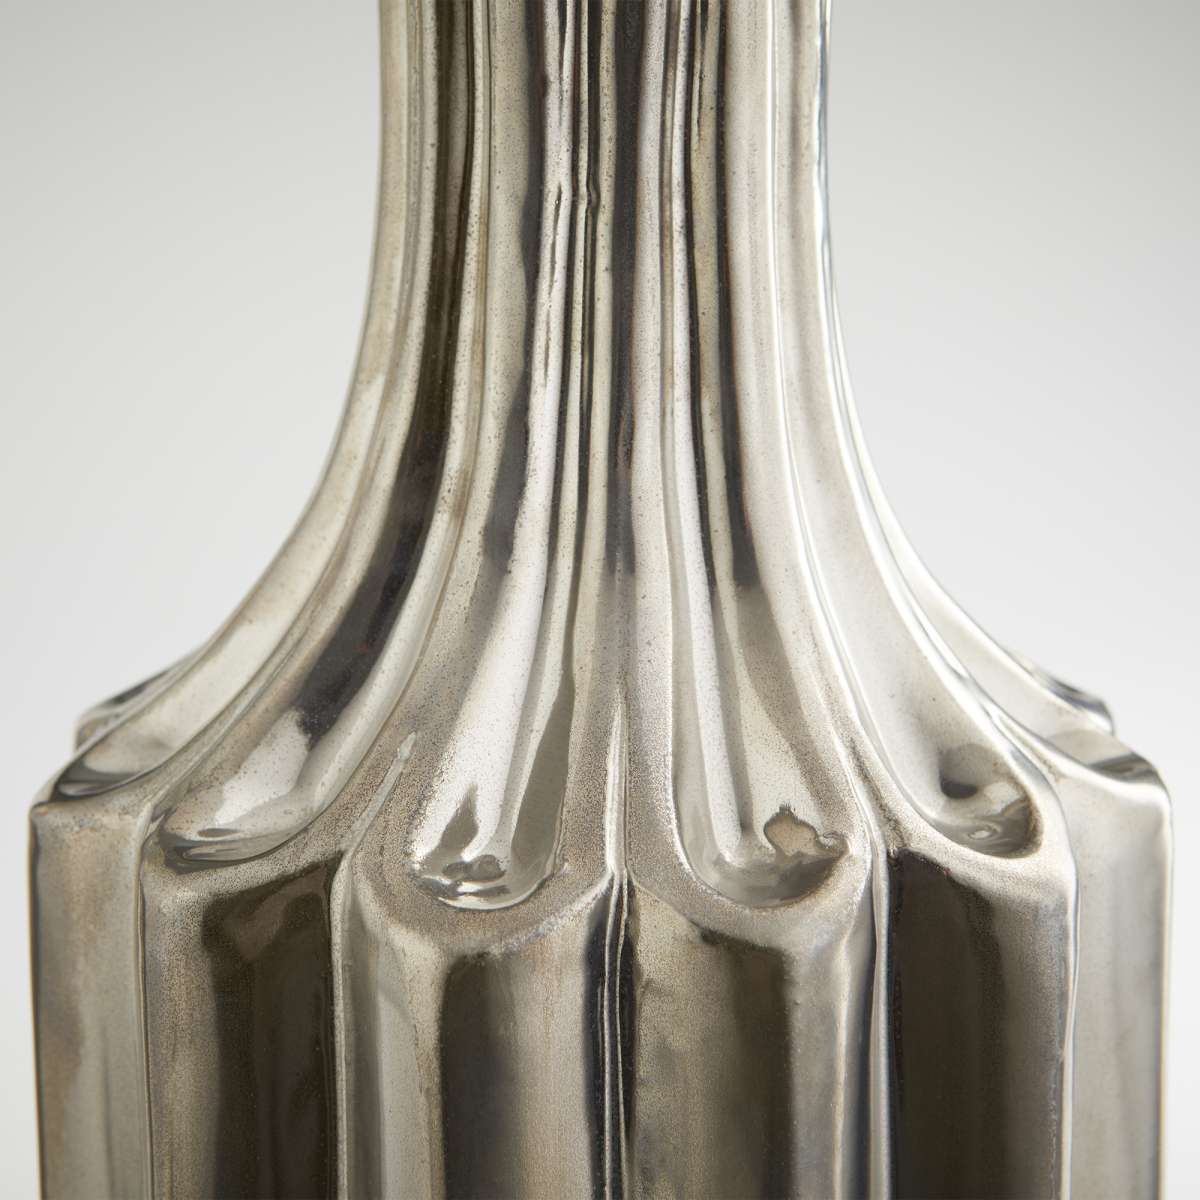 Large Kimbie Vase By Cyan Design | Cyan Design | Modishstore - 6